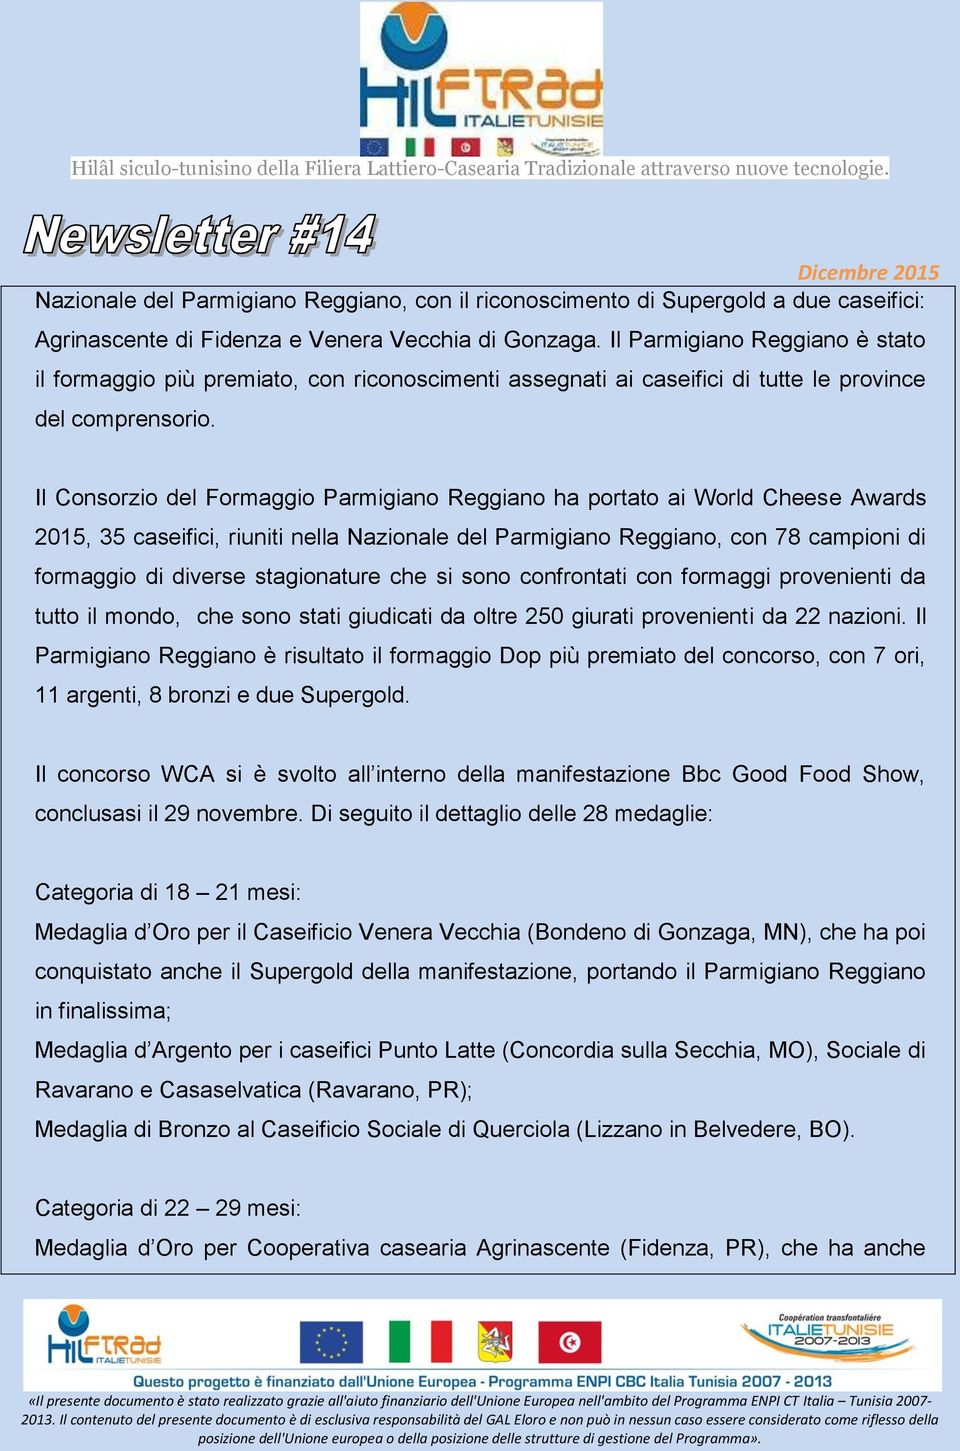 Il Consorzio del Formaggio Parmigiano Reggiano ha portato ai World Cheese Awards 2015, 35 caseifici, riuniti nella Nazionale del Parmigiano Reggiano, con 78 campioni di formaggio di diverse